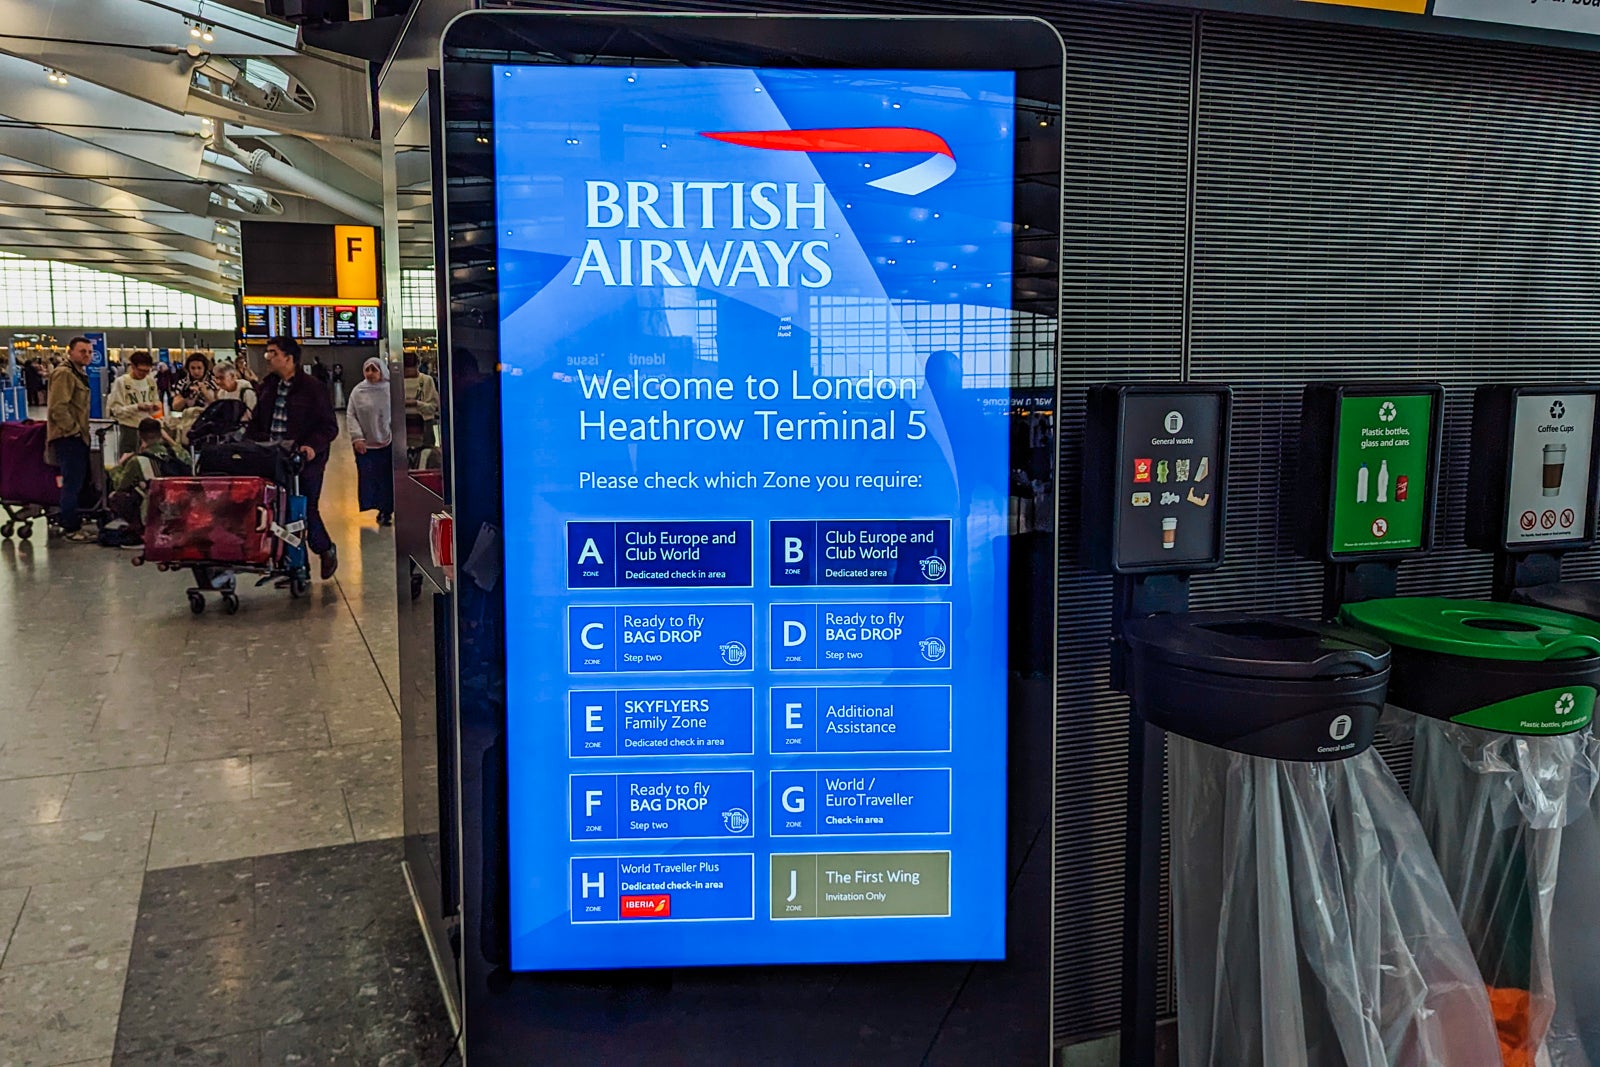 20240305 British Airways A380 World Traveller Economy BSmithson 5 - Travel News, Insights & Resources.